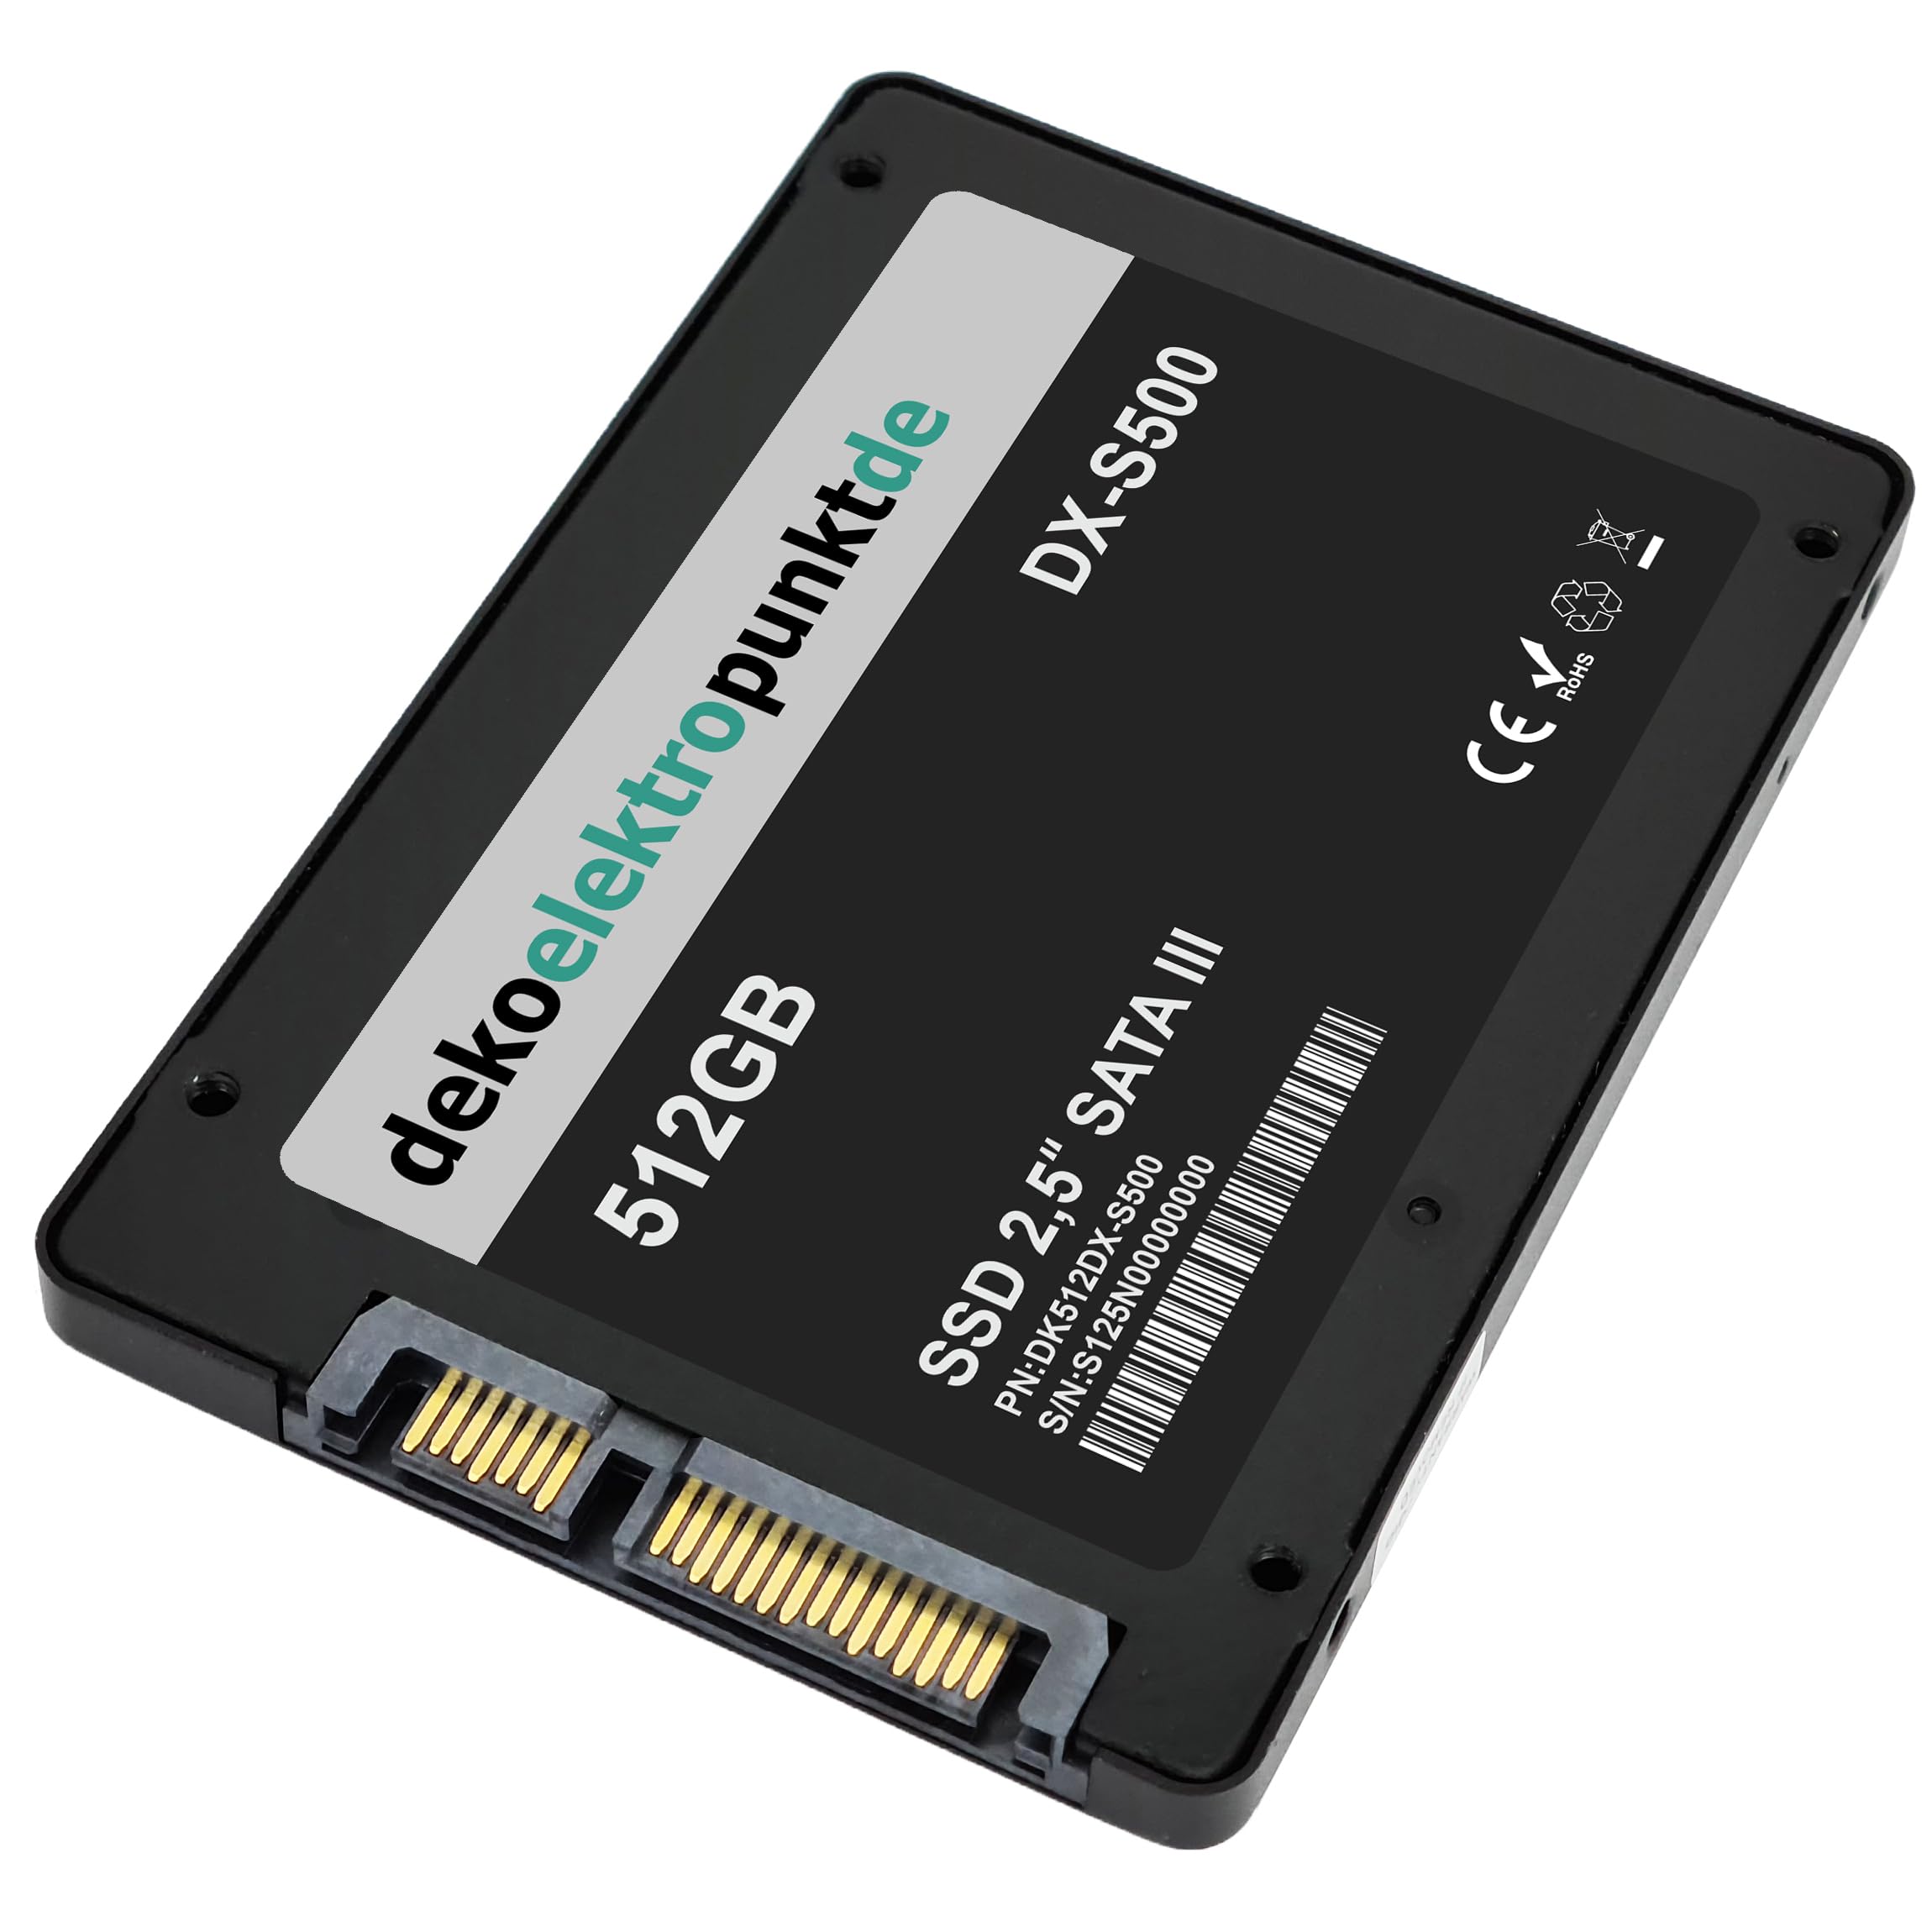 dekoelektropunktde 512GB SSD Festplatte passend für Toshiba Satellite M505-S4980, Alternatives Ersatzteil